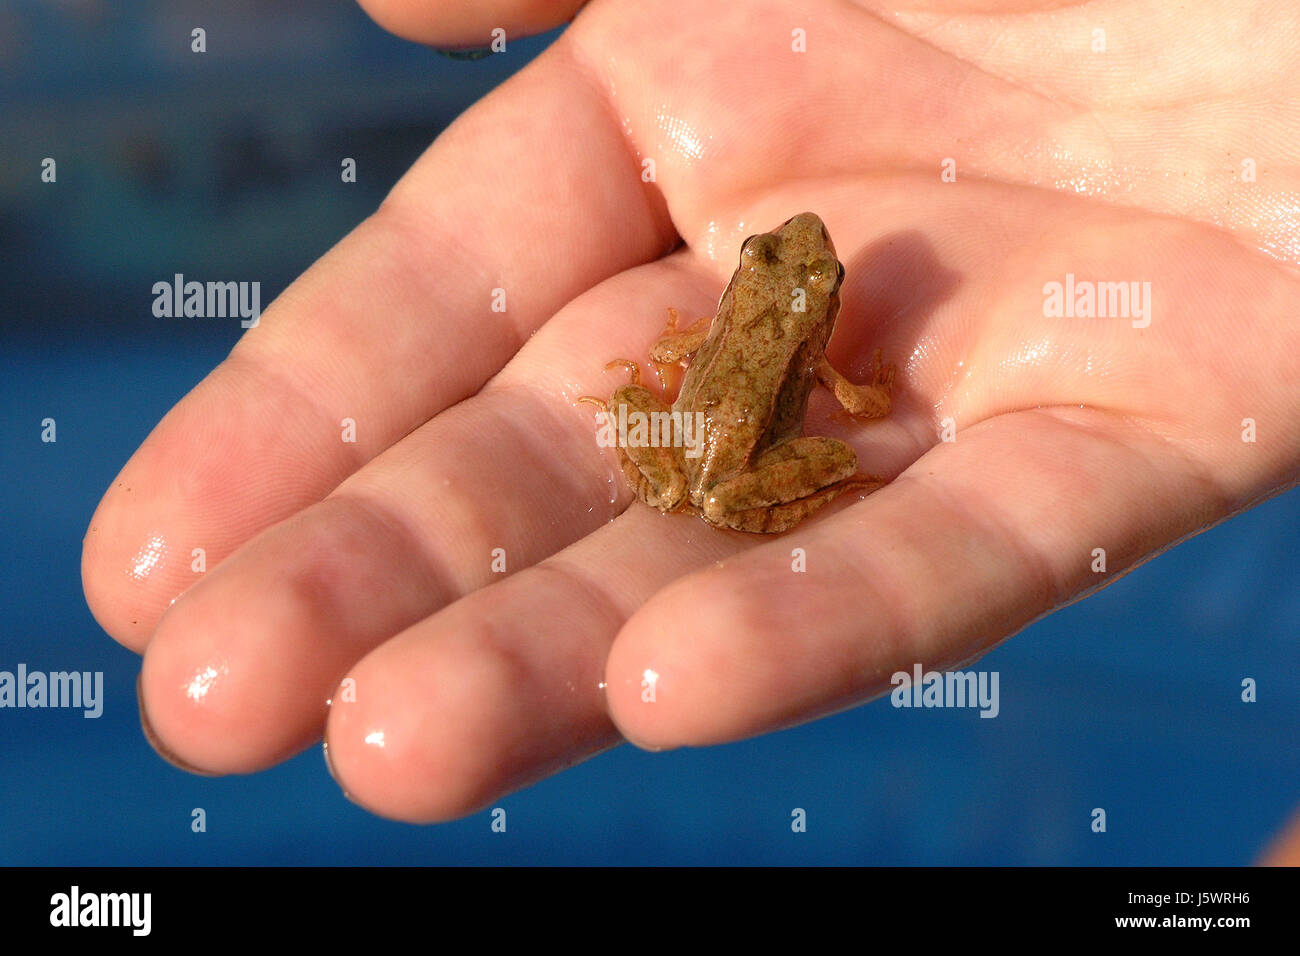 Petit Doigt main toute petite grenouille crapaud court tenir la main minuscule petit doigt Banque D'Images